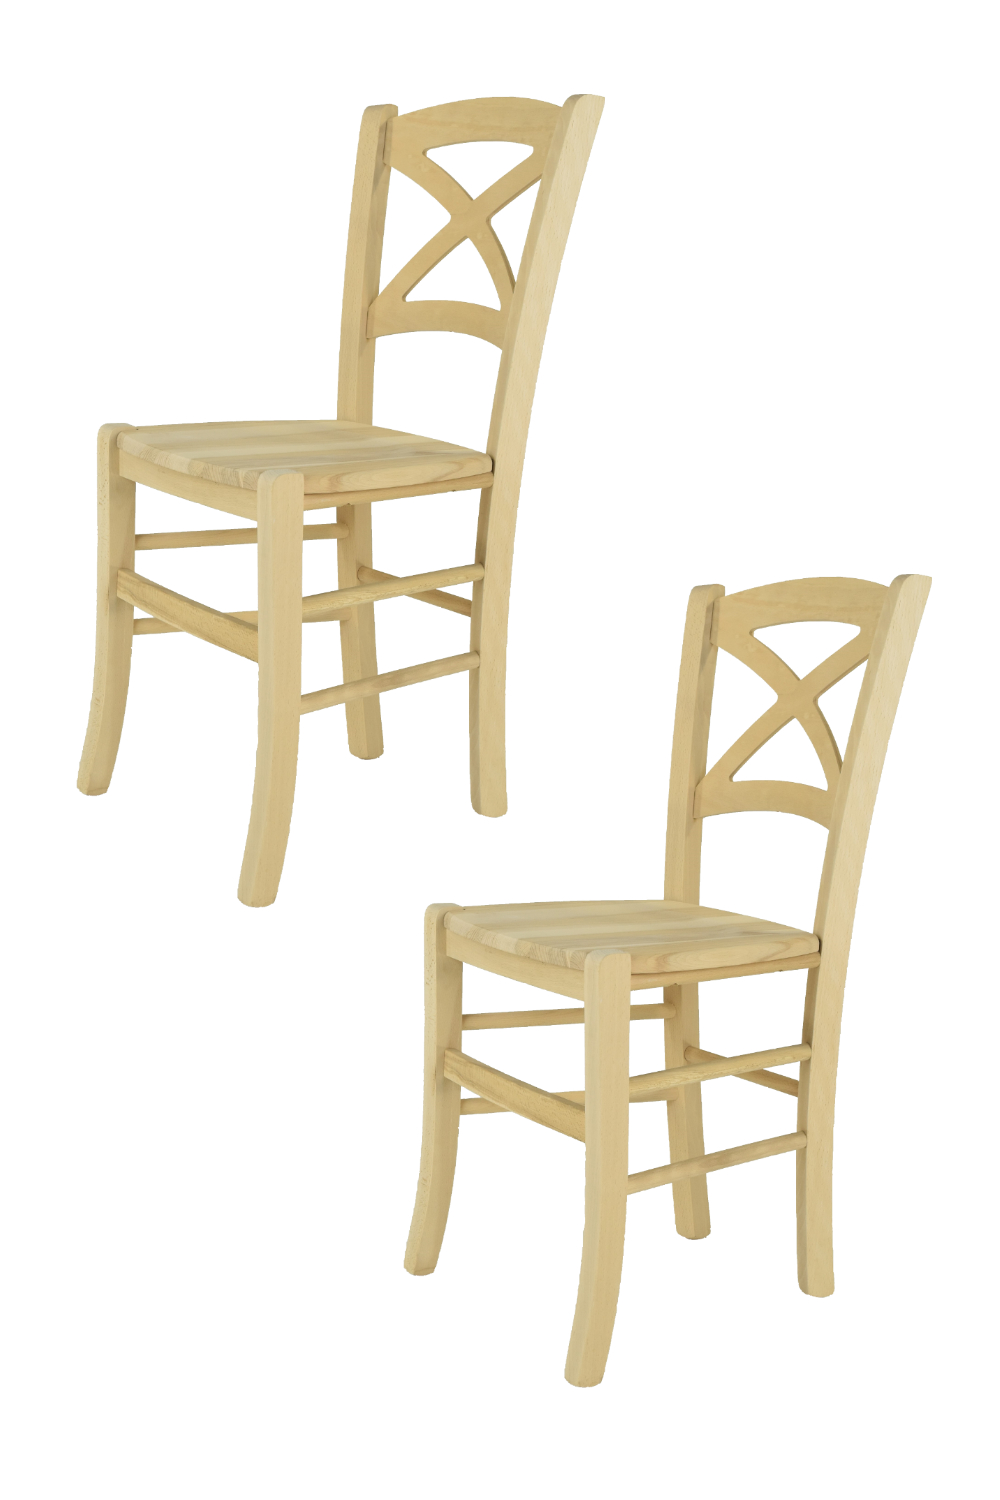 Tommychairs – Set 2 sillas Cross para cocina y comedor, estructura en madera de haya lijada, no tratada, 100% natural y asiento en madera